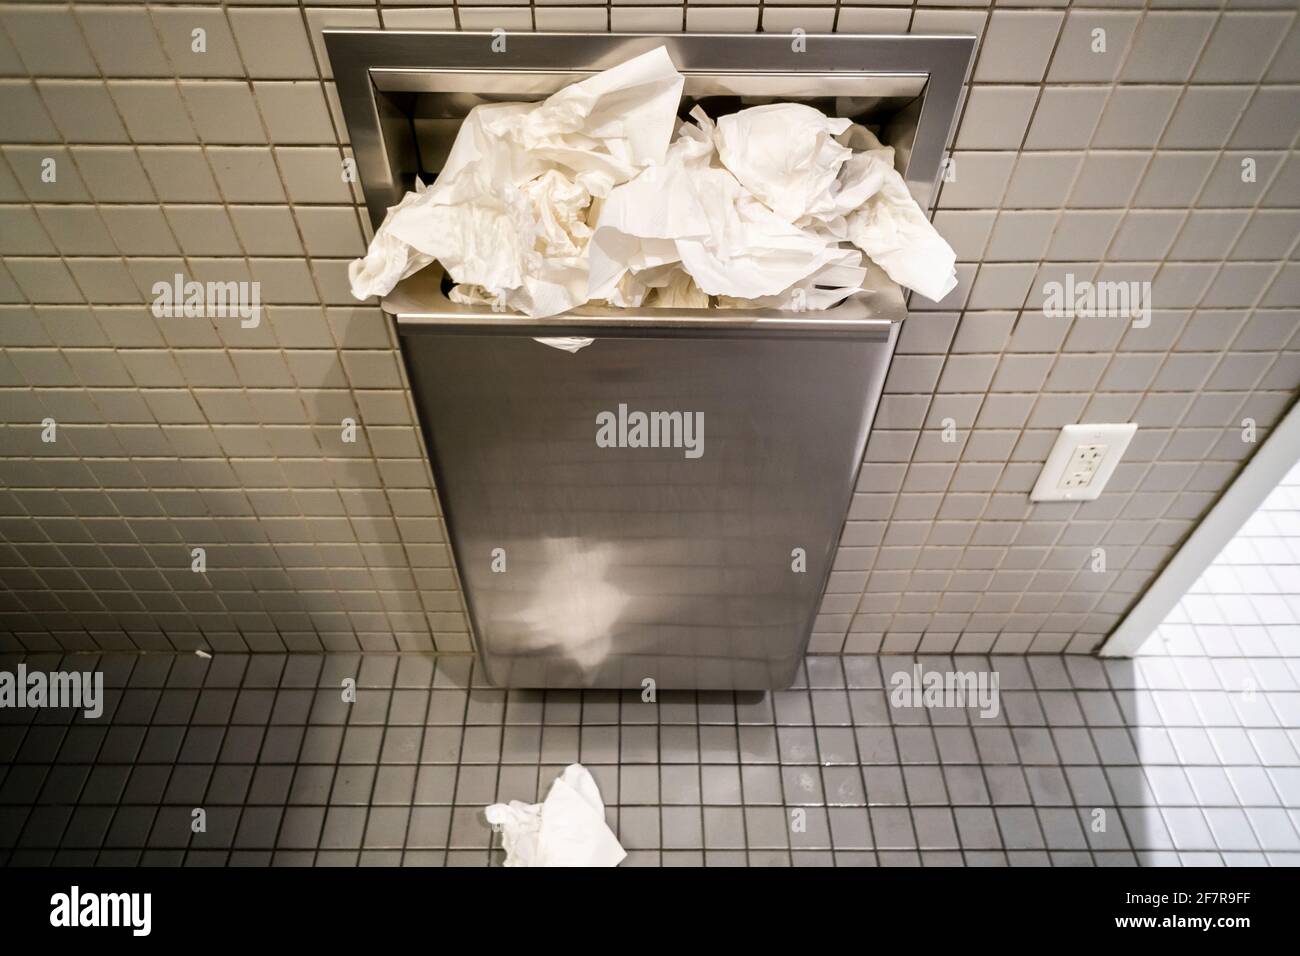 Ricettacolo di carta straripante in bagno di un uomo a New York venerdì 26  marzo 2021. Il NIH ha decretato gli asciugamani di carta essere superiore  agli essiccatori d'aria nei bagni pubblici